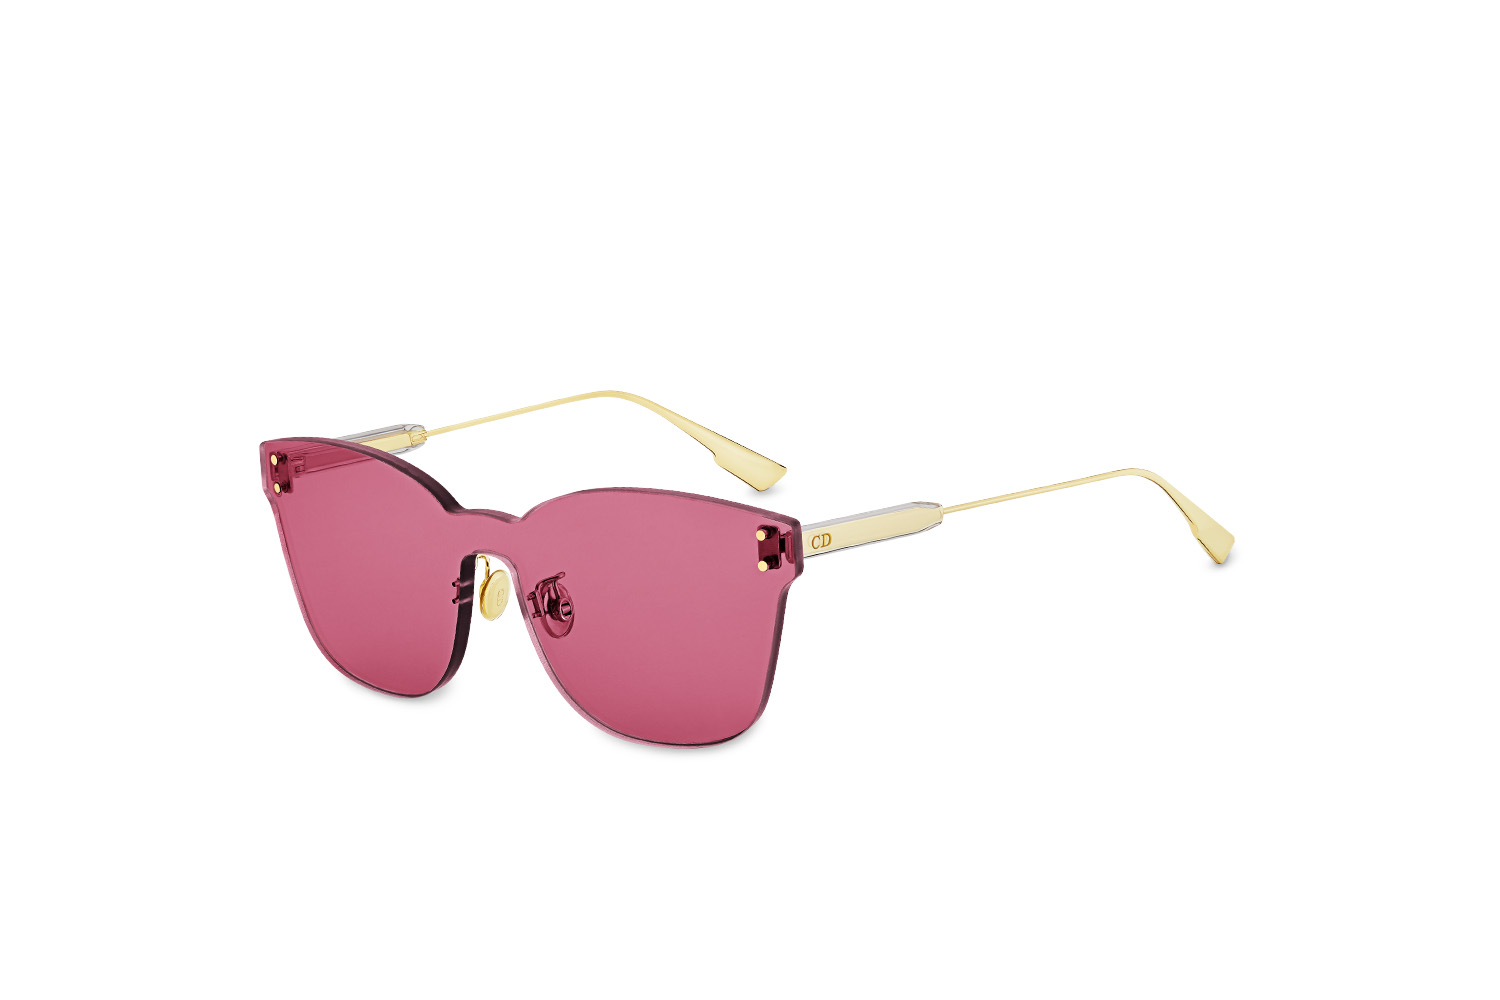 DiorColourQuake's pink-hued shades